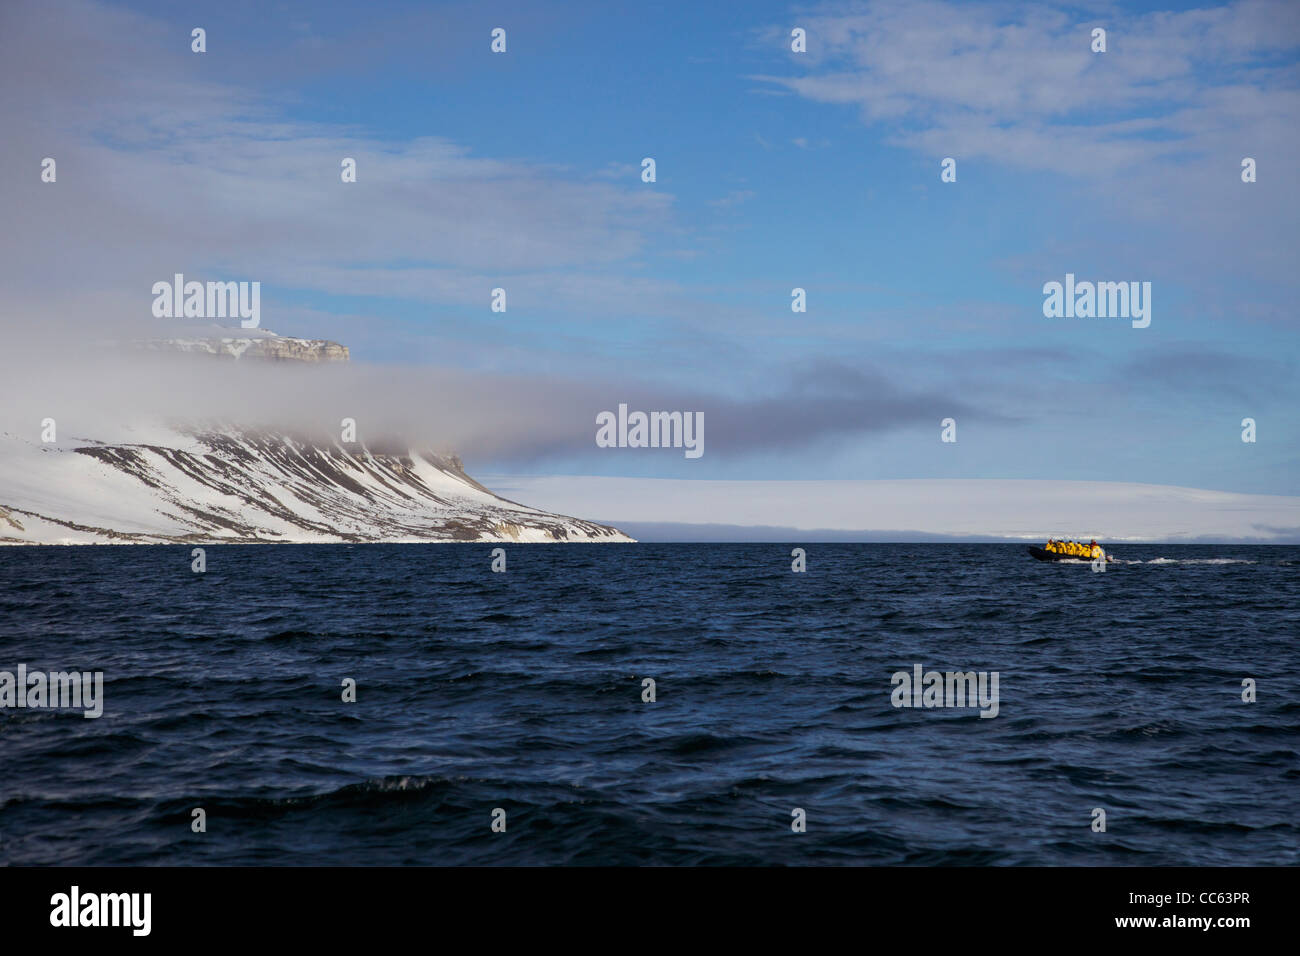 Touristen auf arktische Abenteuer Kreuzfahrt in Zodiac Schlauchboote, Alkefjellet Klippen, nördlichen Spitzbergen, Svalbard, Norwegen, Europa, Stockfoto